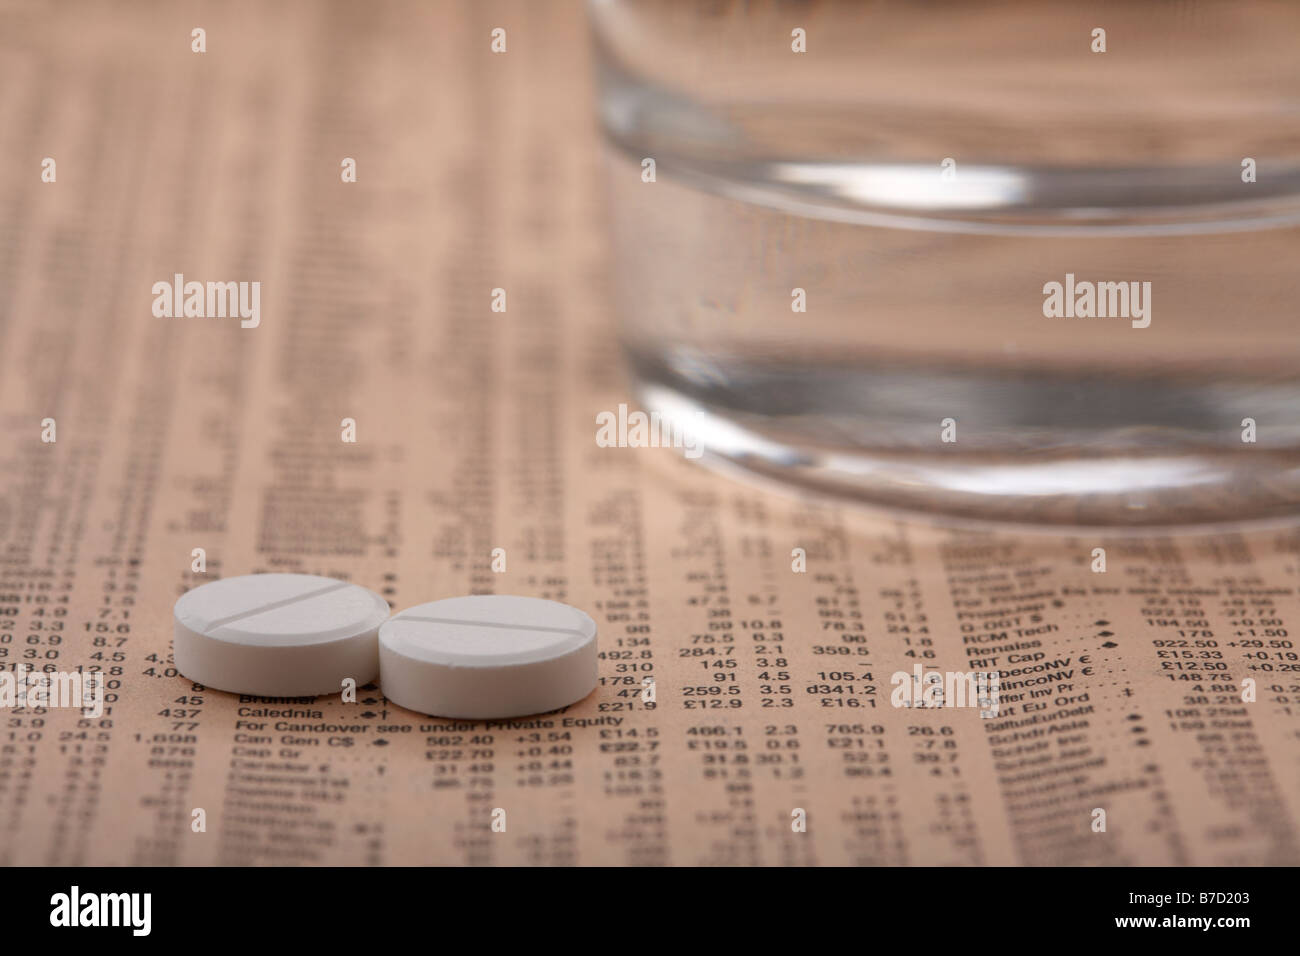 Due paracetamolo aspirina compresse seduto accanto a un bicchiere di acqua su una copia del Financial Times Foto Stock